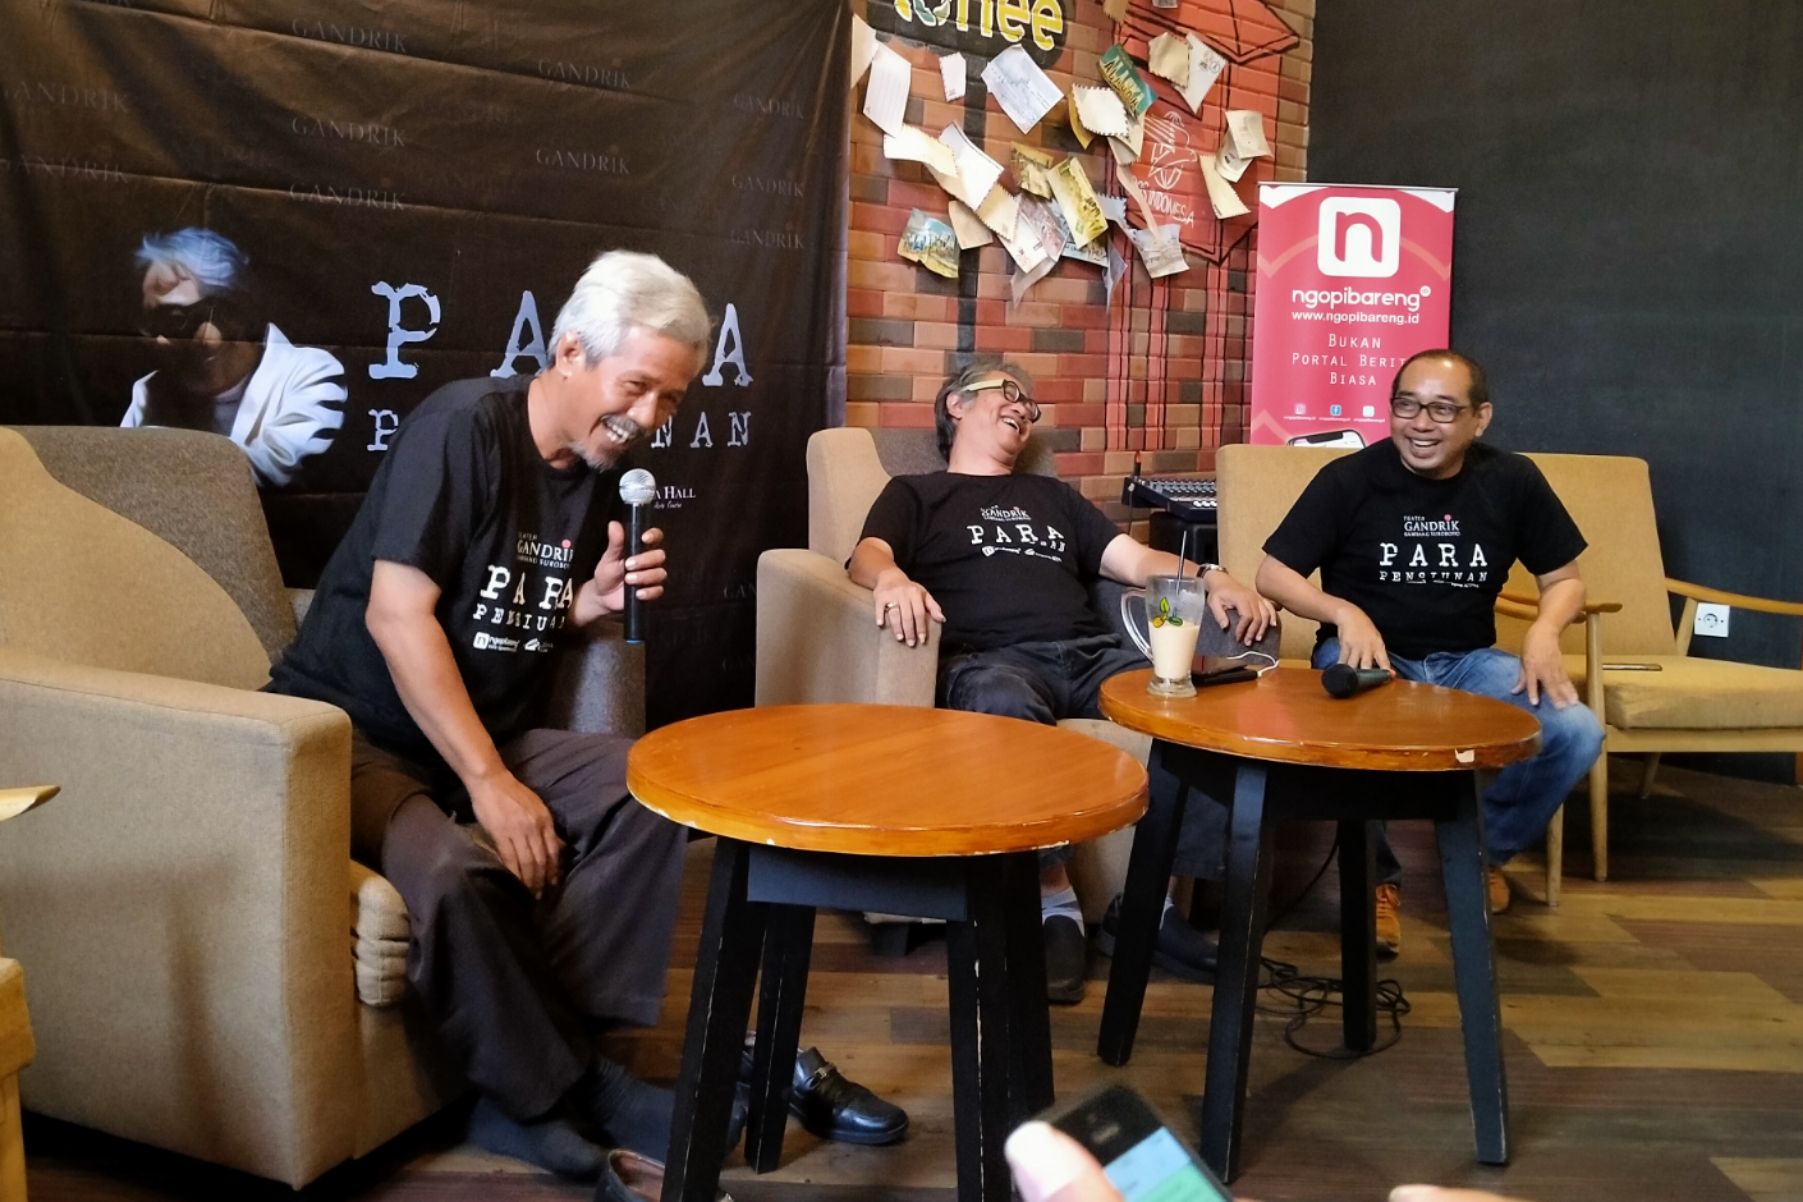 Penulis naskah, Susilo Nugroho (kiri) bersama pemimpin produksi Teater Gandrik, Butet Kartaredjasa, dan CEO Ngopibareng.id, Arif Afandi dalam konferensi pers di Coffee Toffee Taman Apsari, Surabaya, Kamis 5 Desember 2019. (Foto: Fariz/ngopibareng.id)